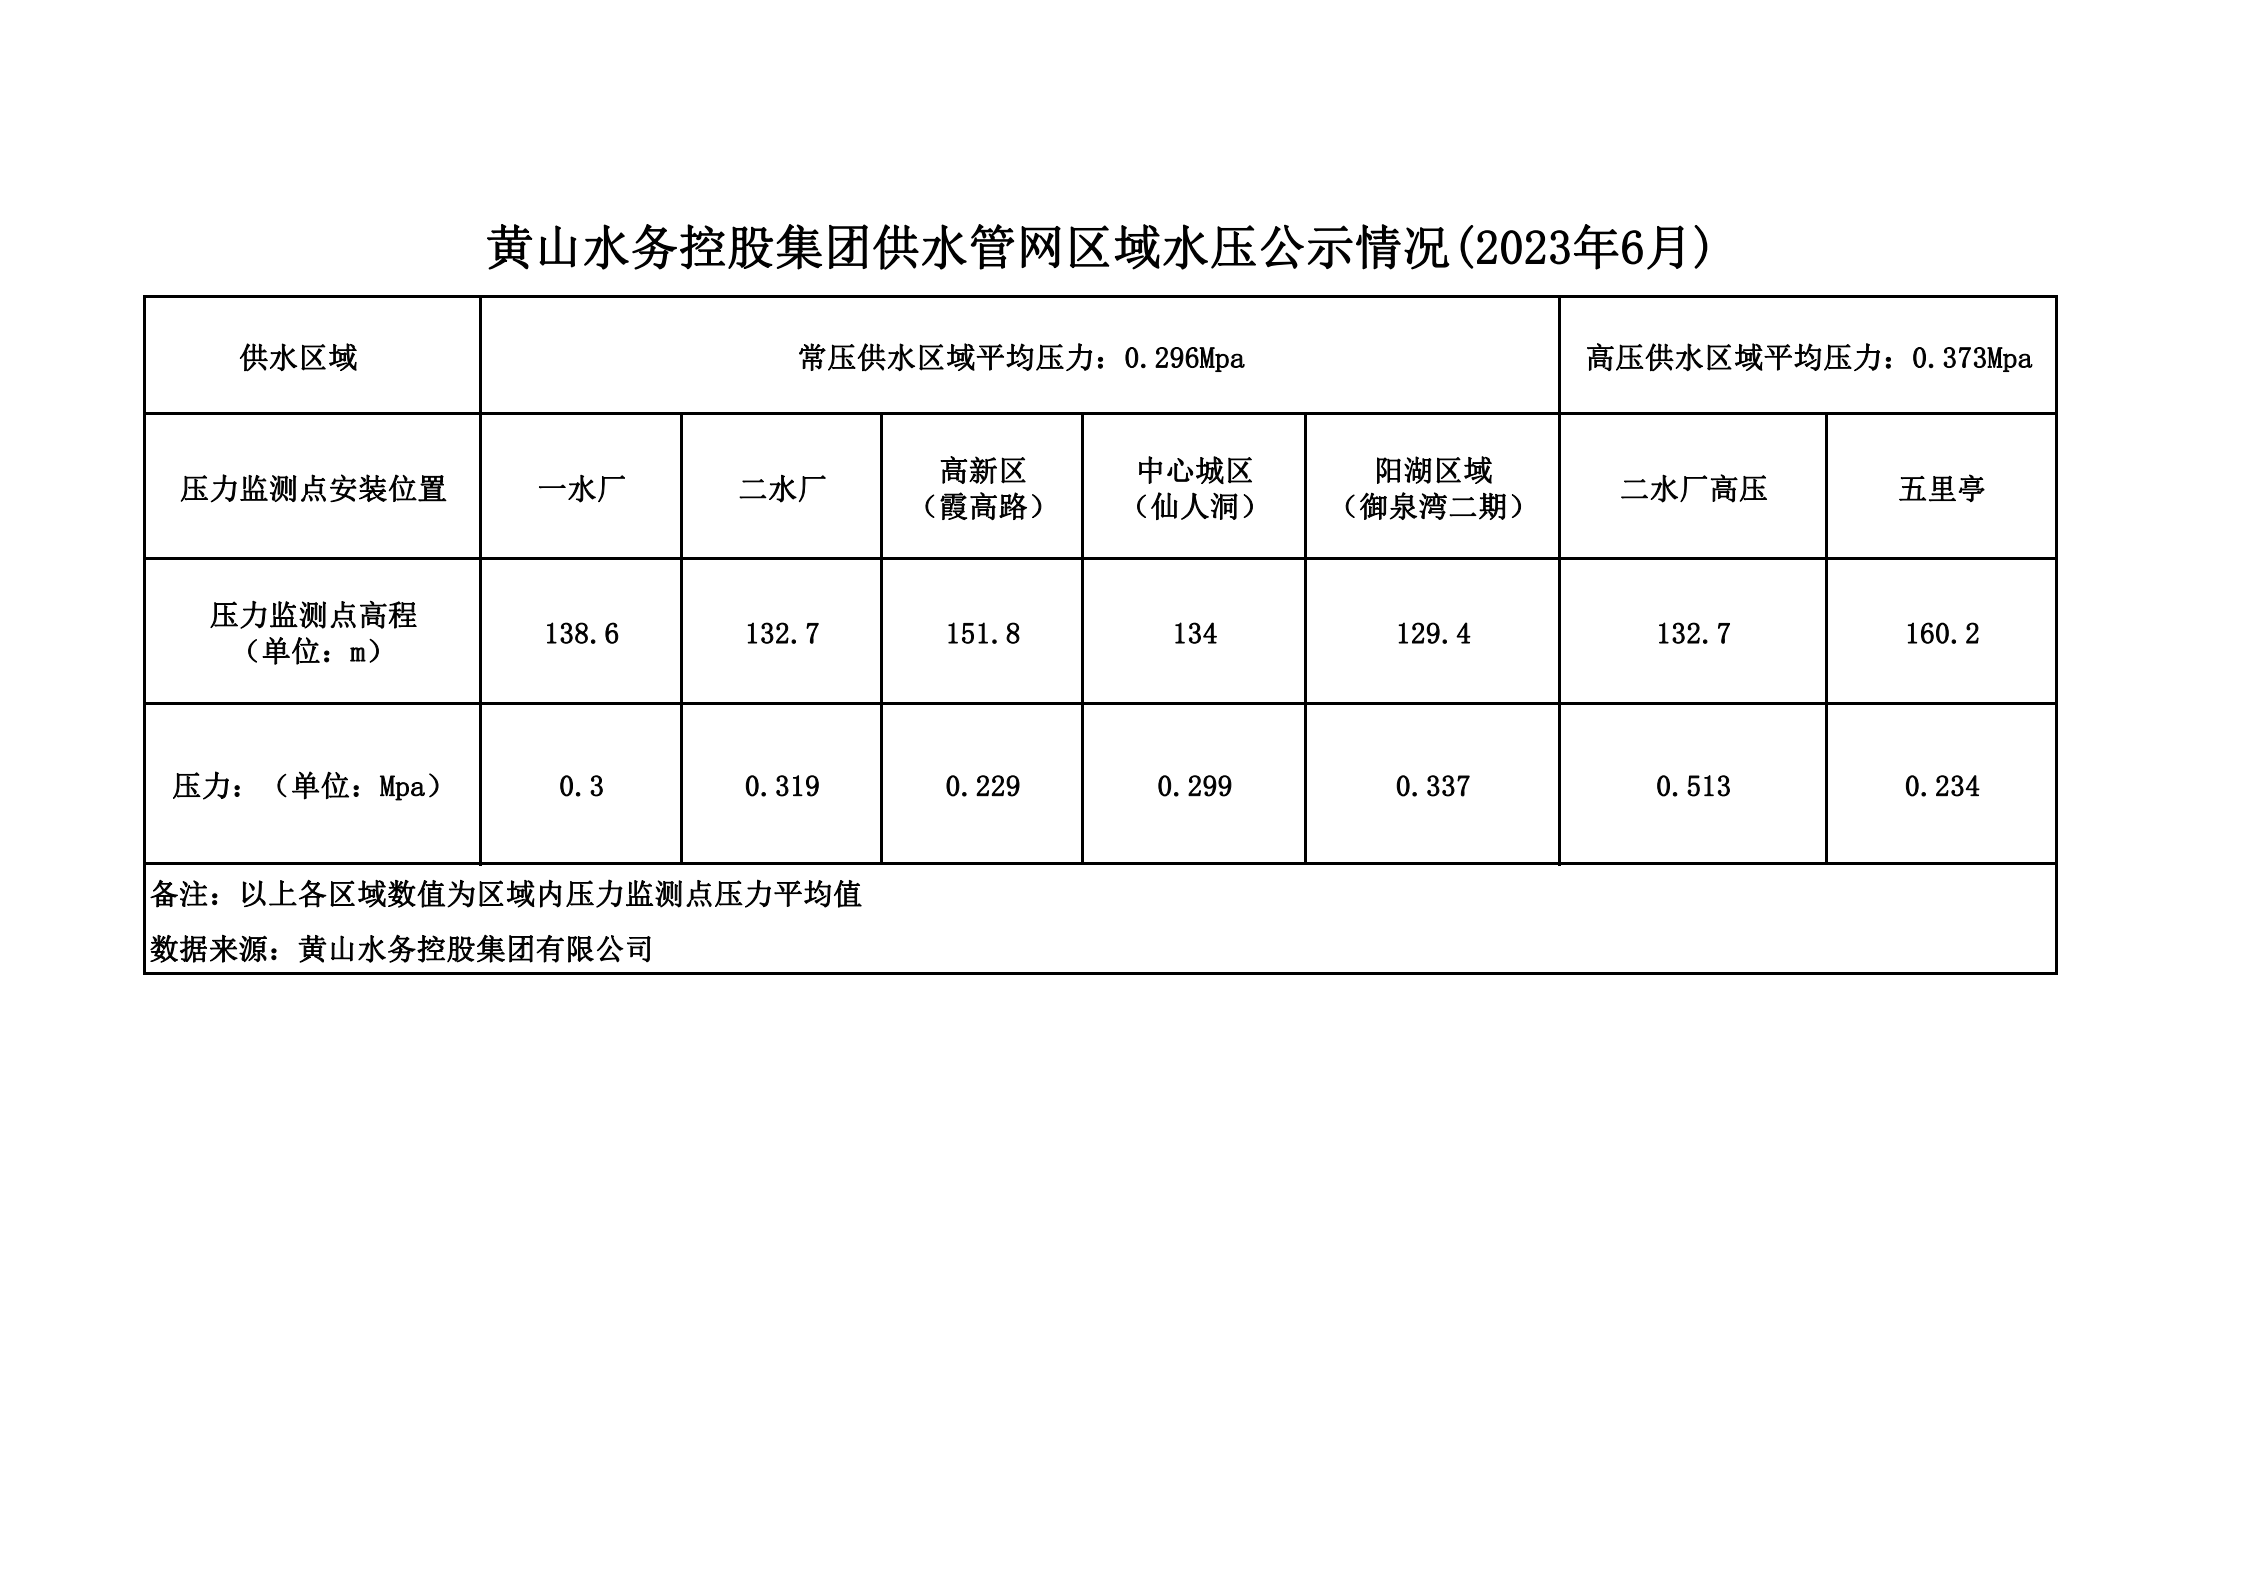 黄山水务控股集团供水管网区域水压公示情况(2023年6月)_00.png